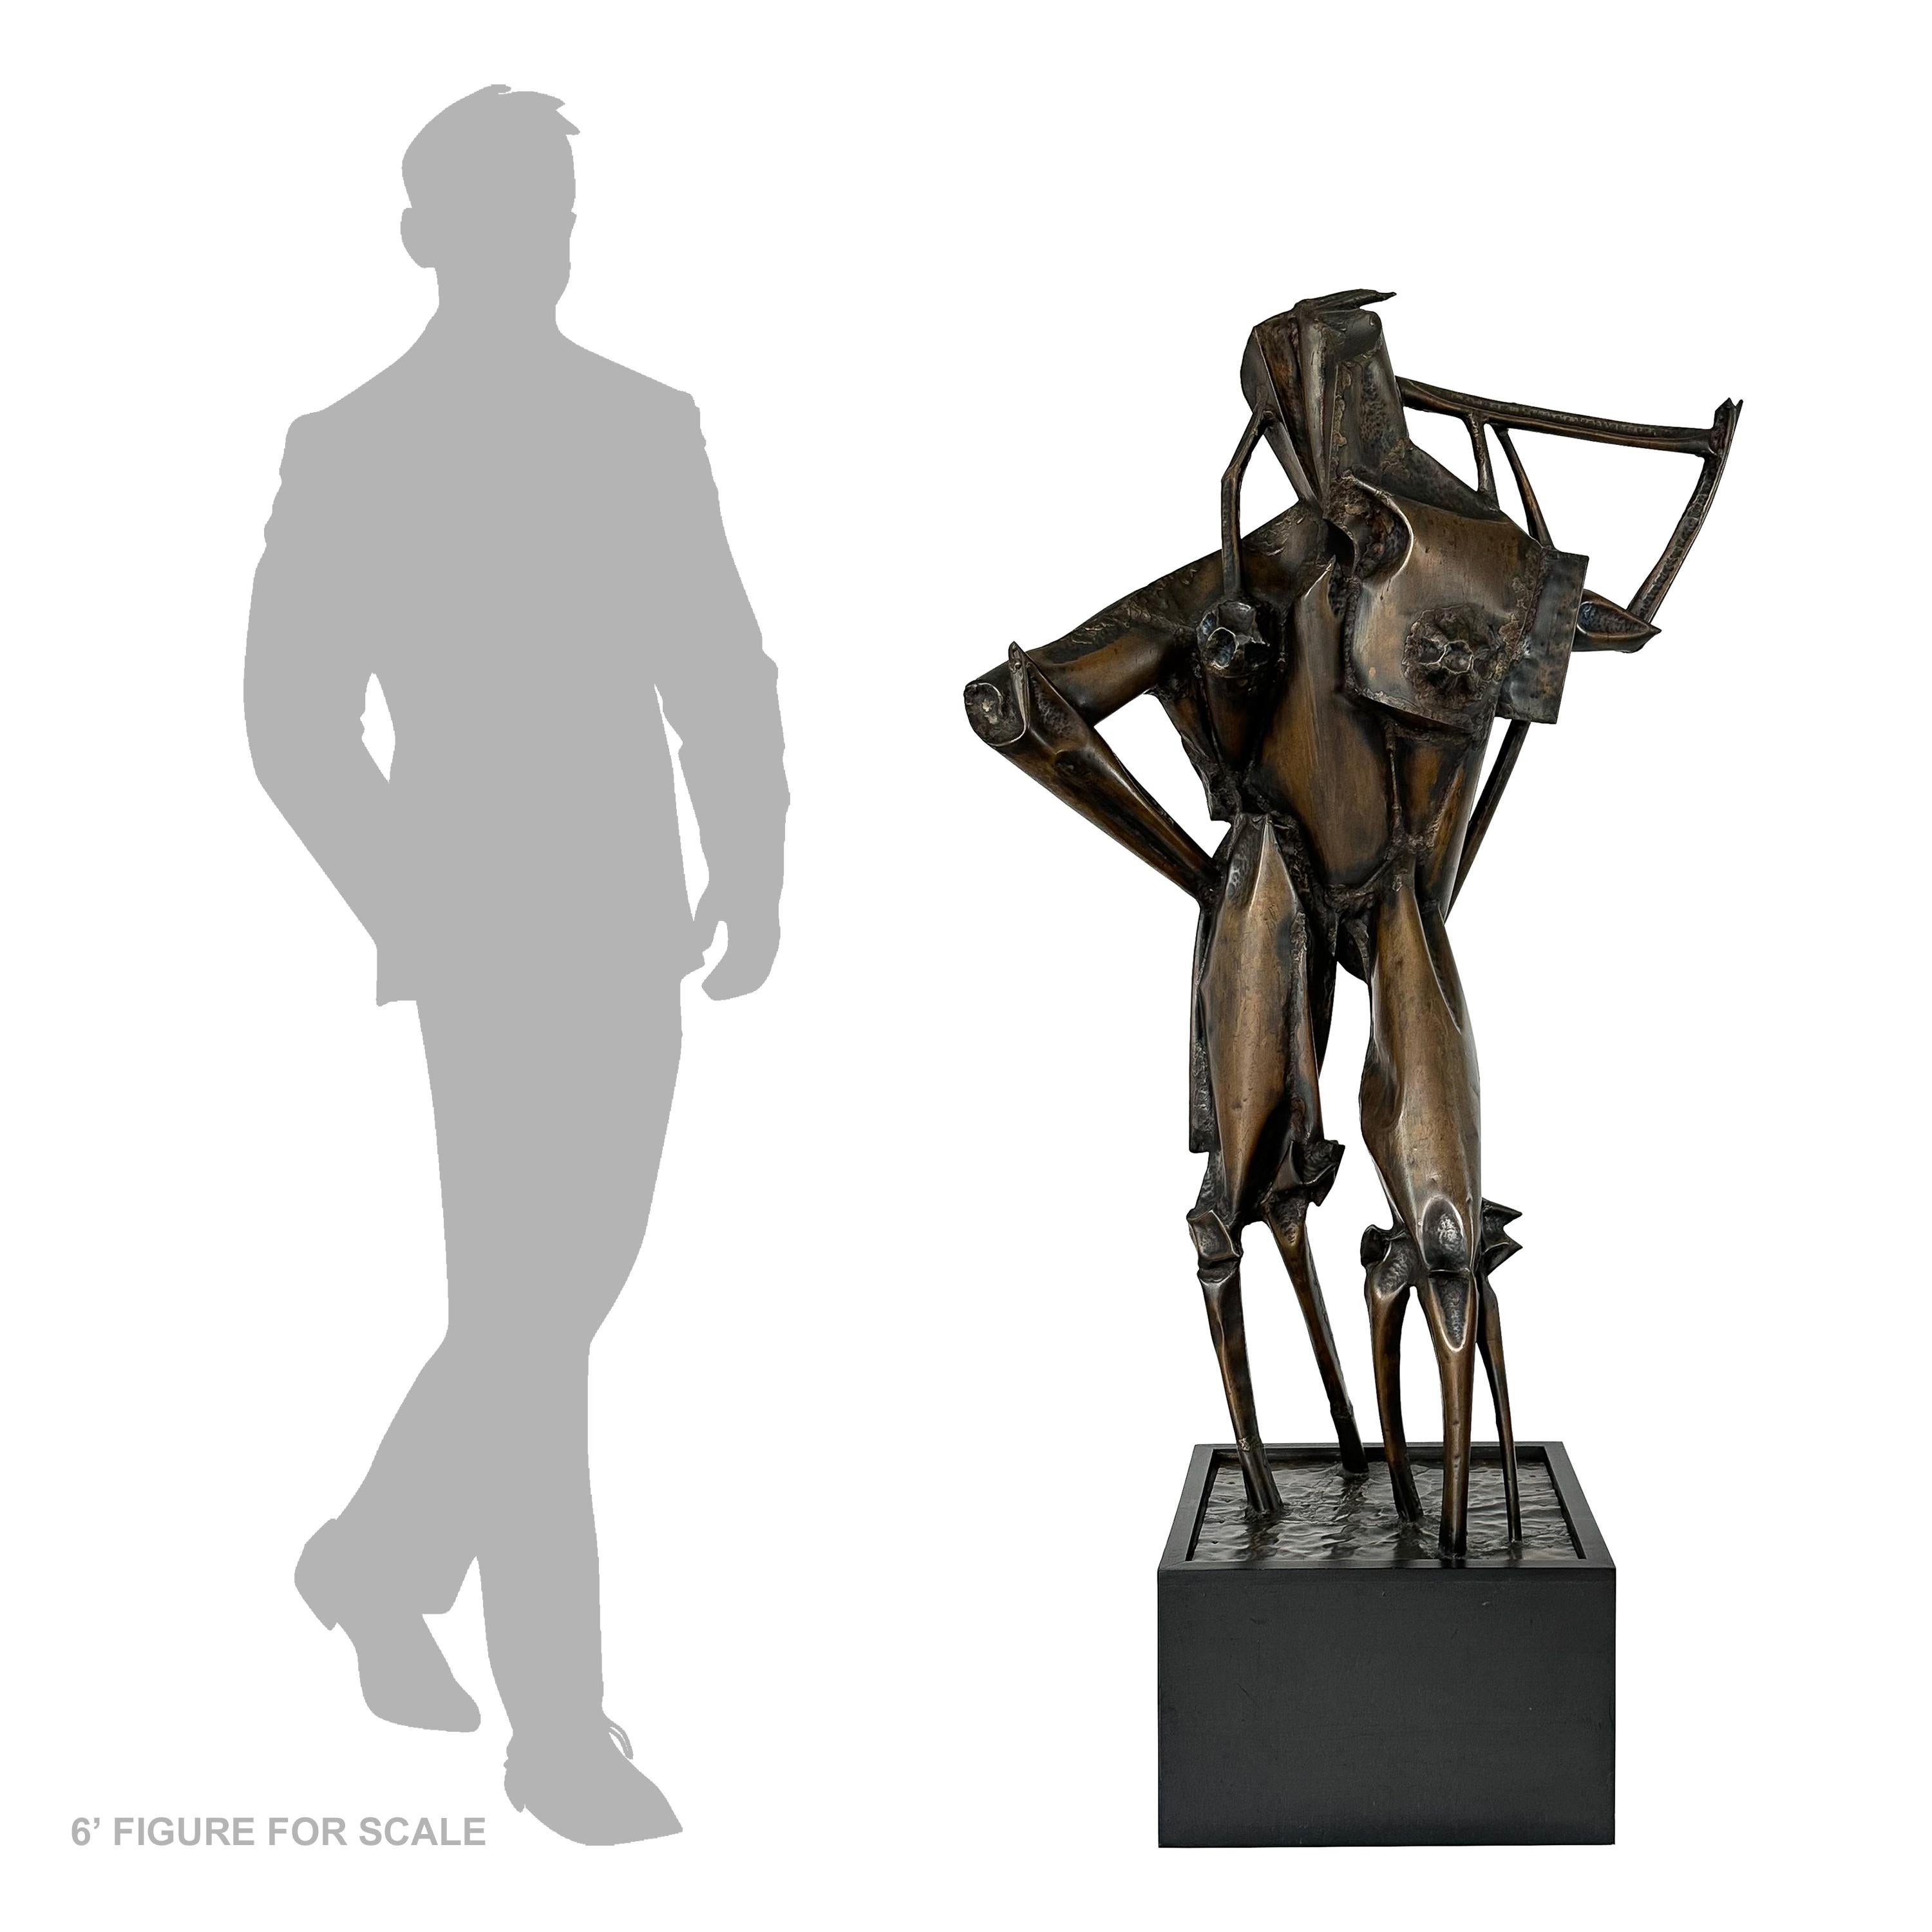 Cette sculpture abstraite monumentale en bronze de Clyde Ball (1929-2017) est une exploration profonde de la forme et du concept, d'une hauteur impressionnante de 63 pouces. Créée dans les années 1970, elle présente l'énergie brute et non raffinée